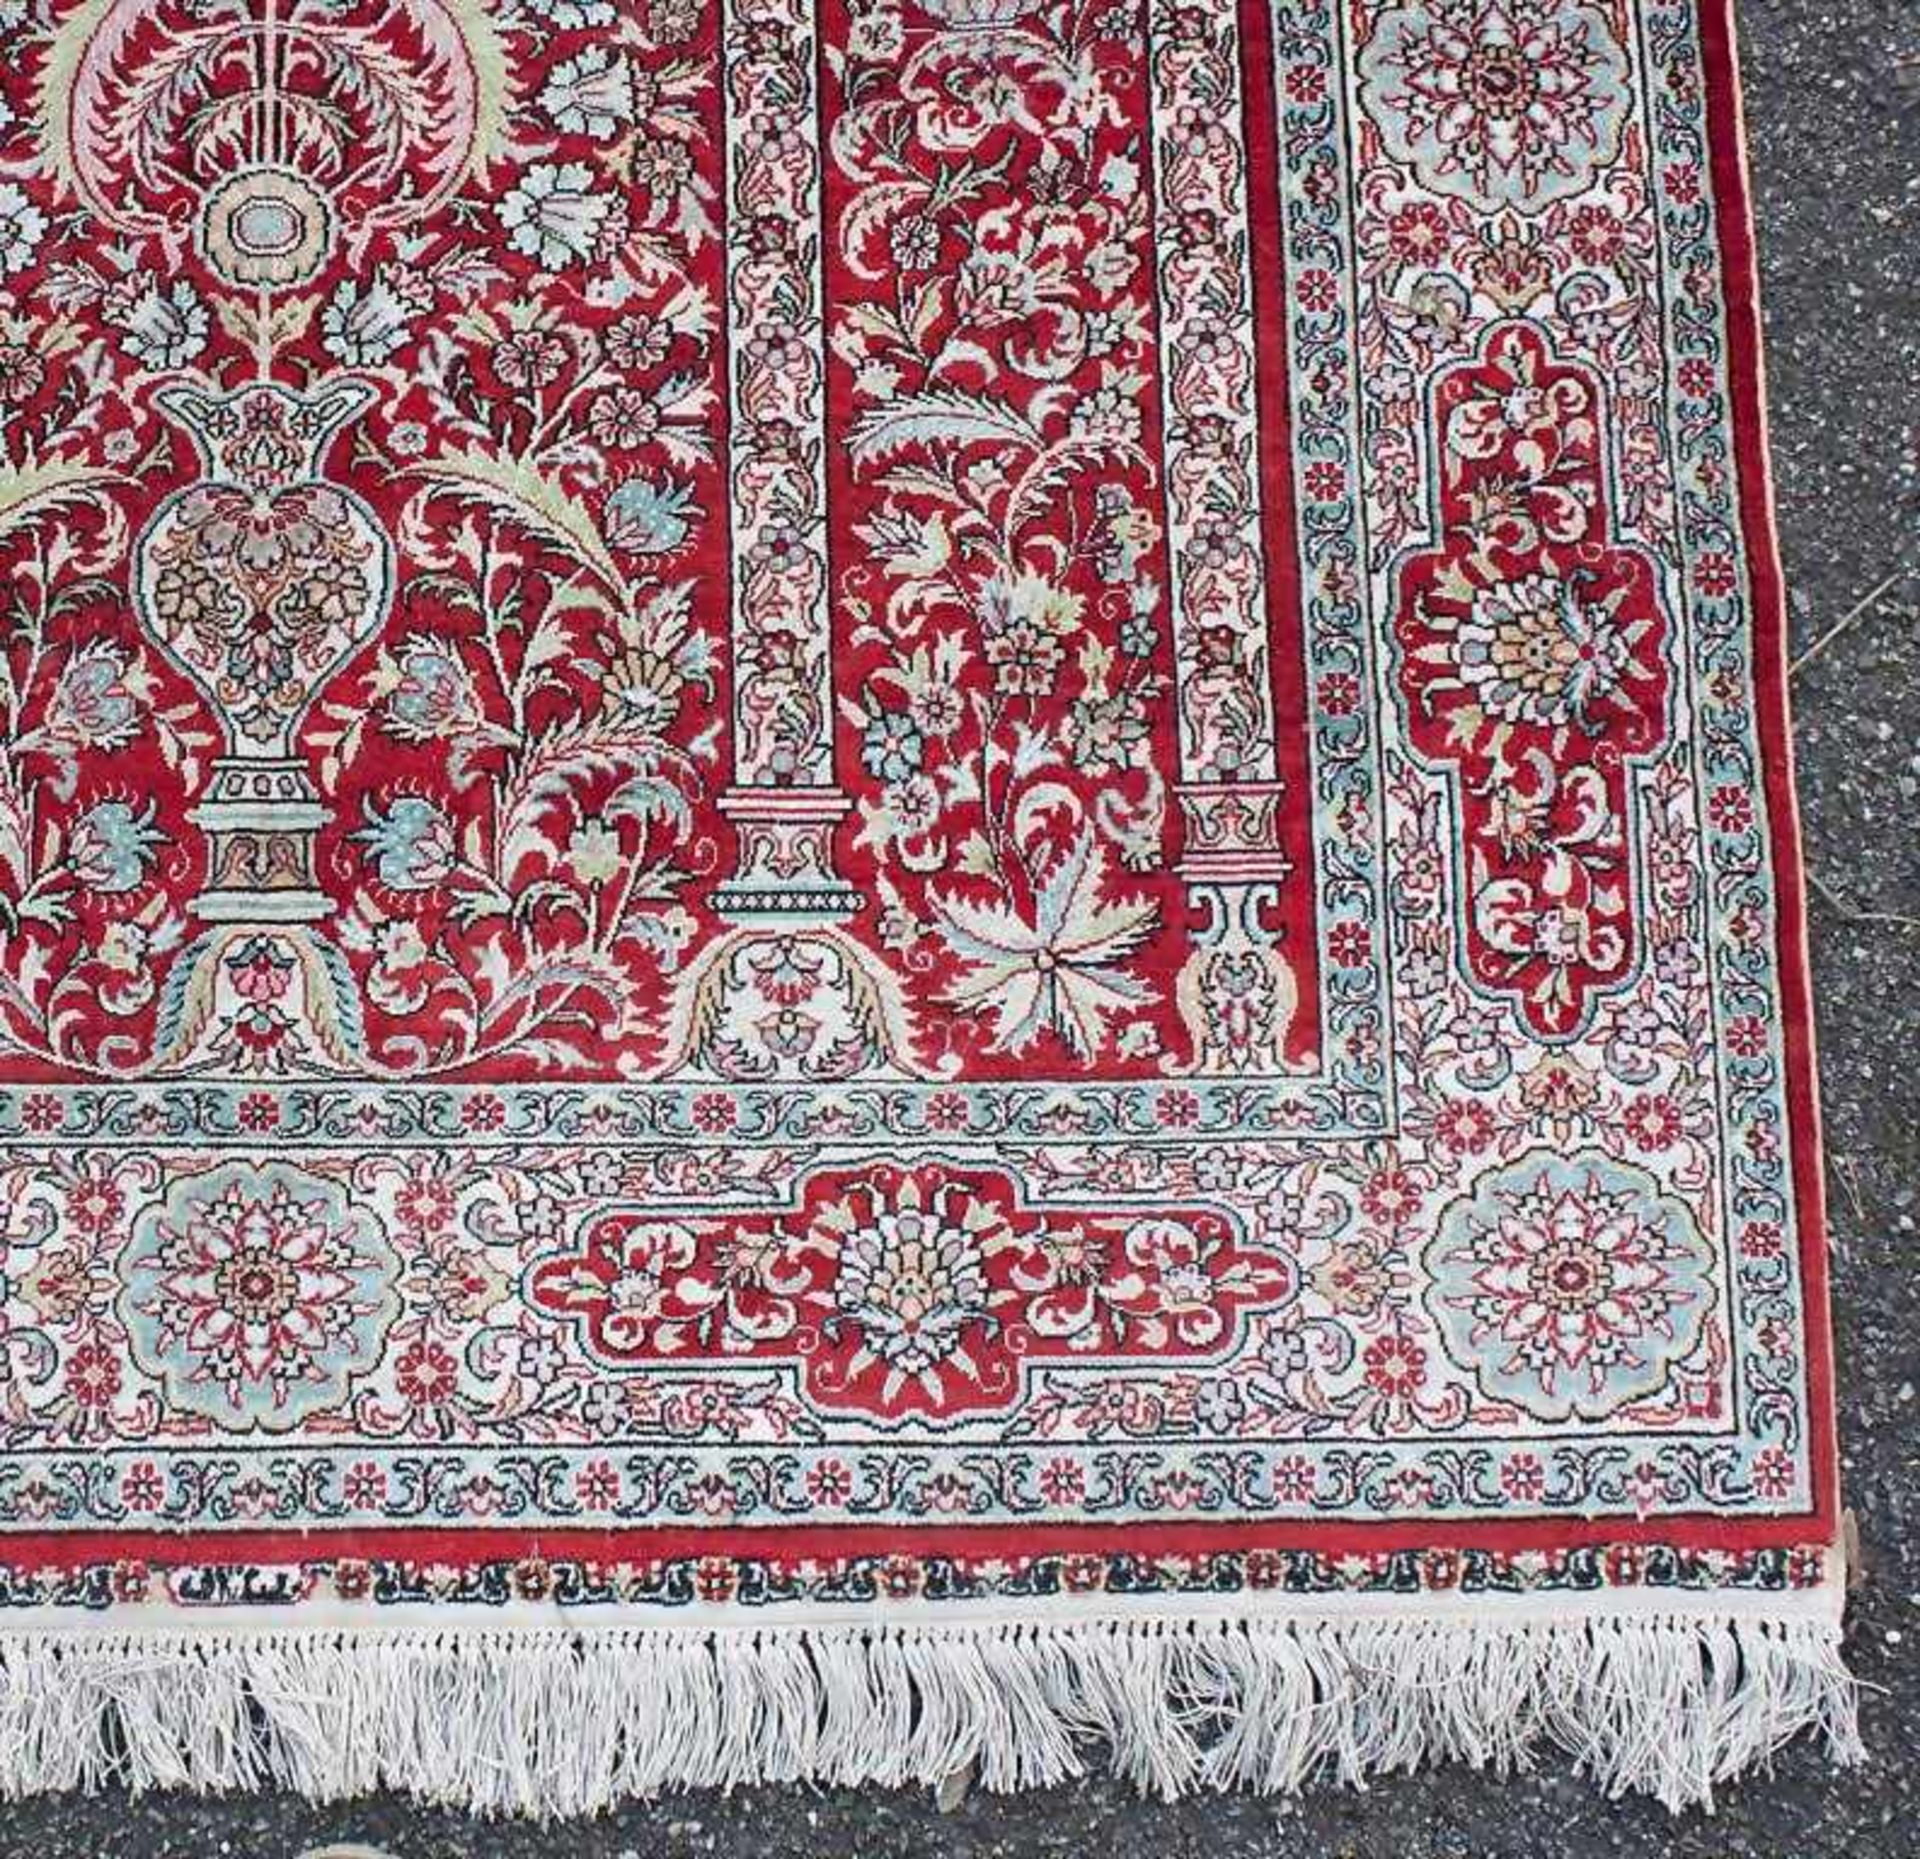 Gebetsteppich/Prayer Rug SilkSeide. Rotgrundig mit Beige- und Hellblautönen. Darstellung einer - Bild 2 aus 2